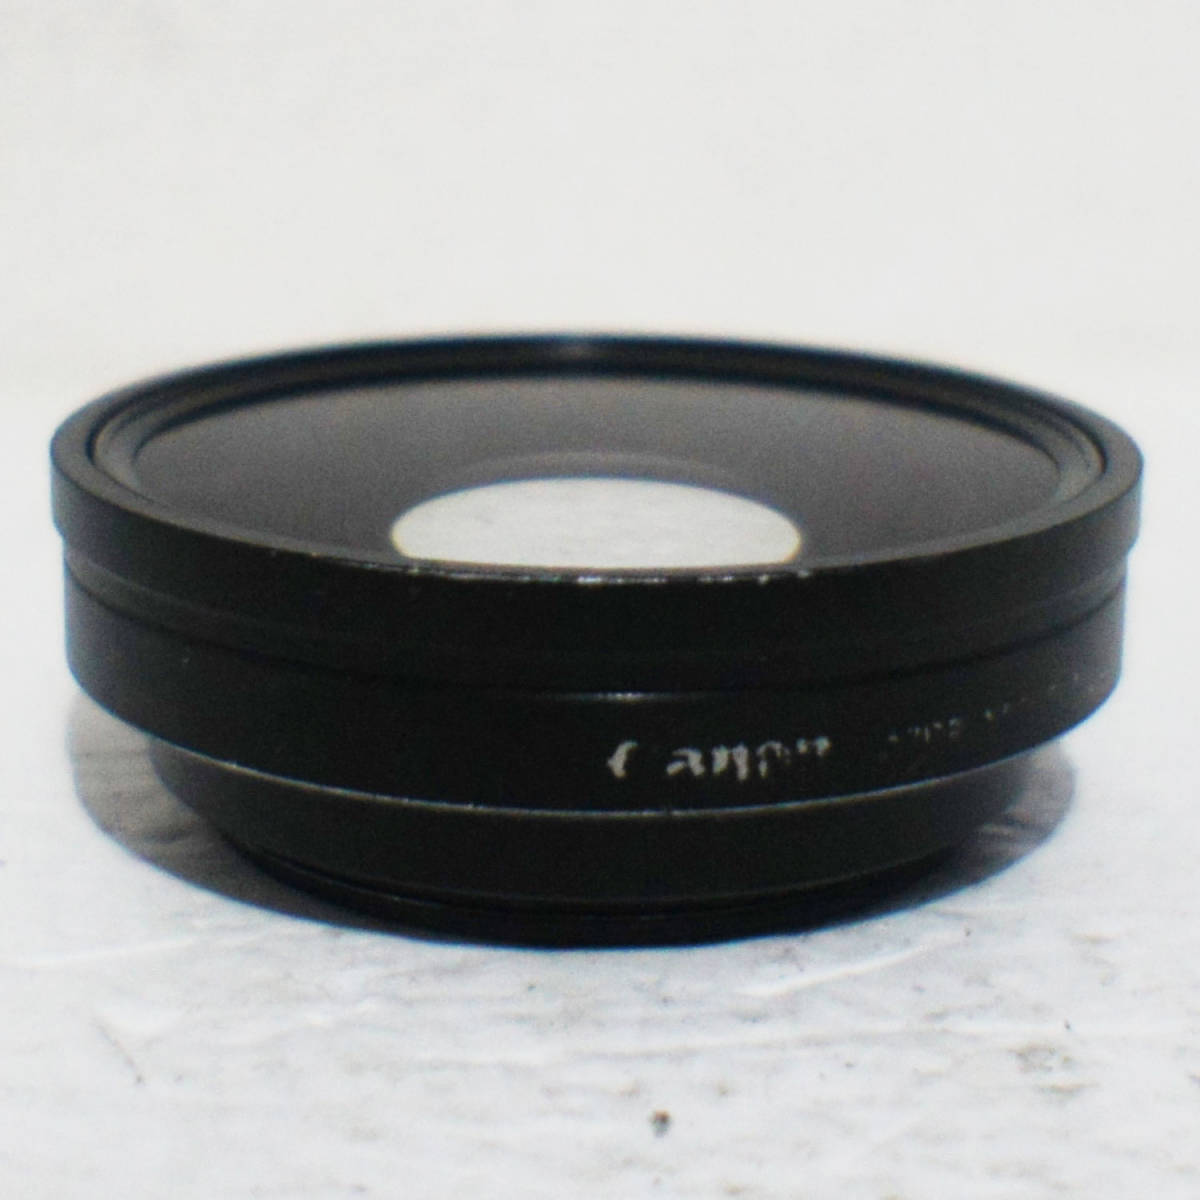 【送料無料】Canon 「WA-H58」 0.75倍ワイコン 58mm径 iVIS HF G21 XA20等に 動作確認済み_画像2